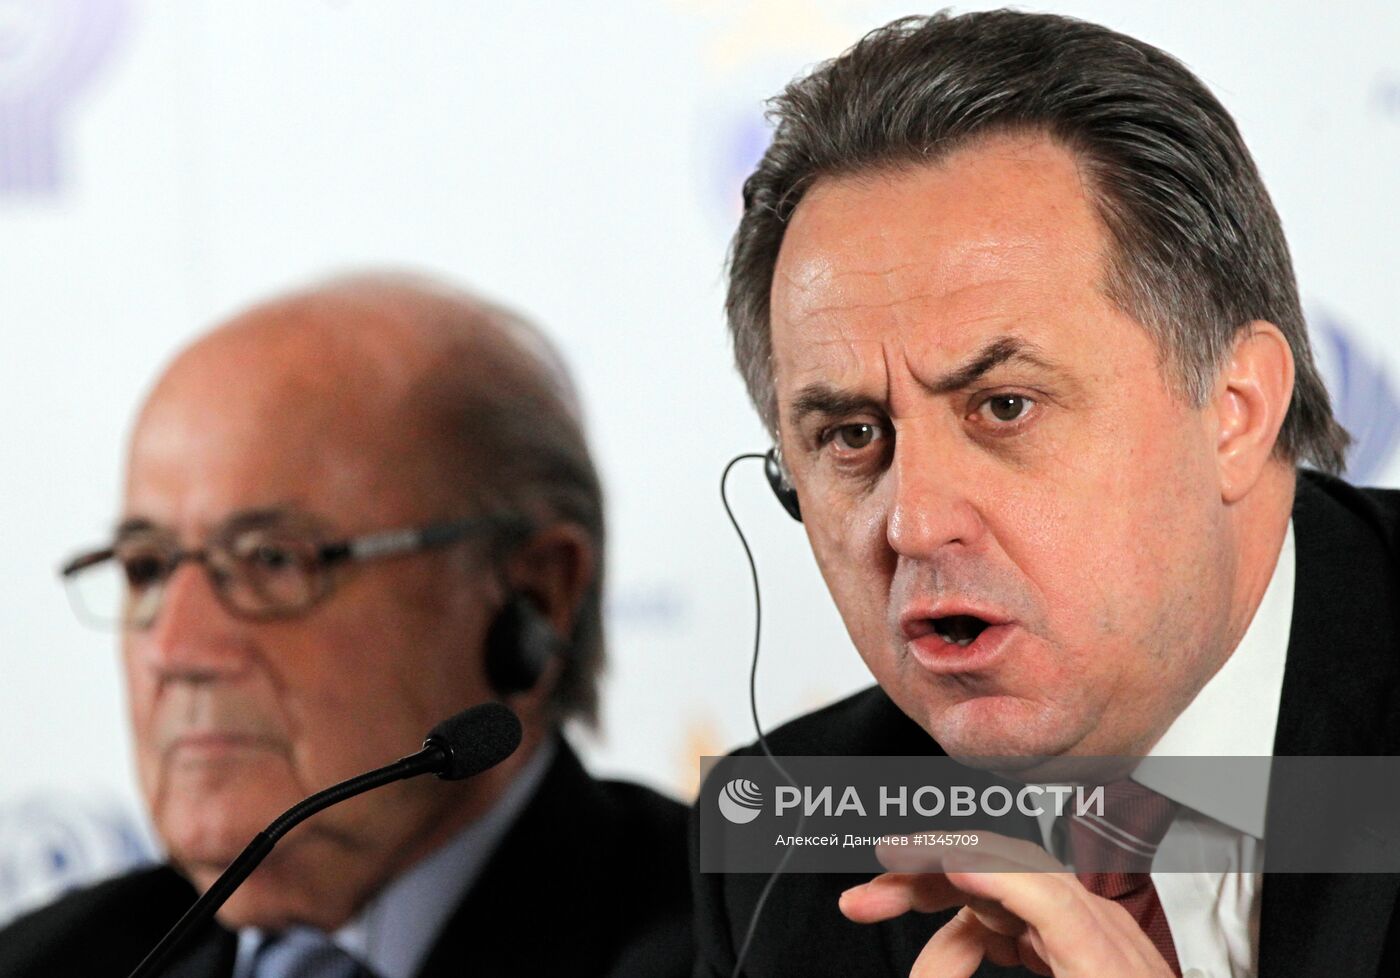 Пресс-конференция, посвященная визиту делегации ФИФА в Россию